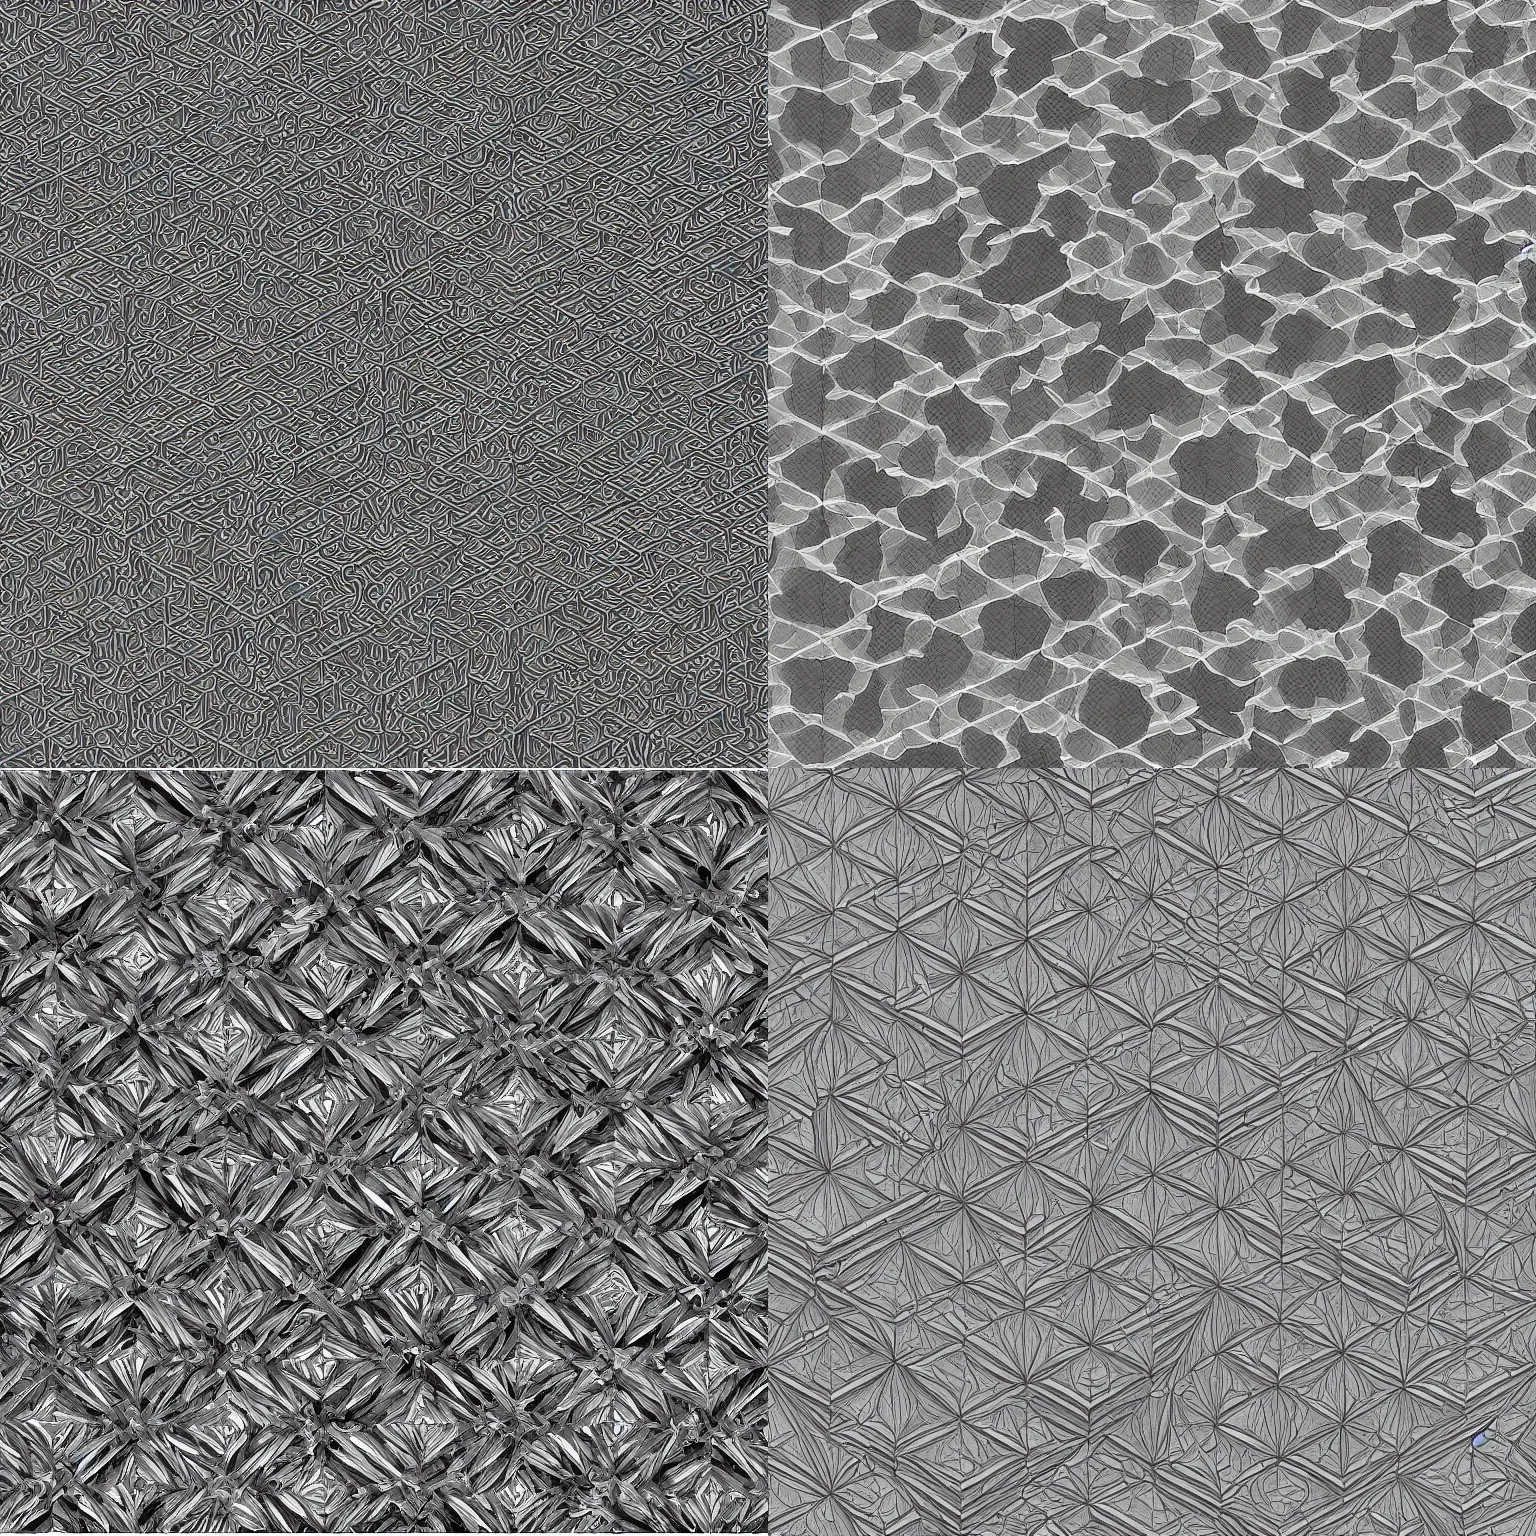 Prompt: hypercube tesselation, by M.C. Escher